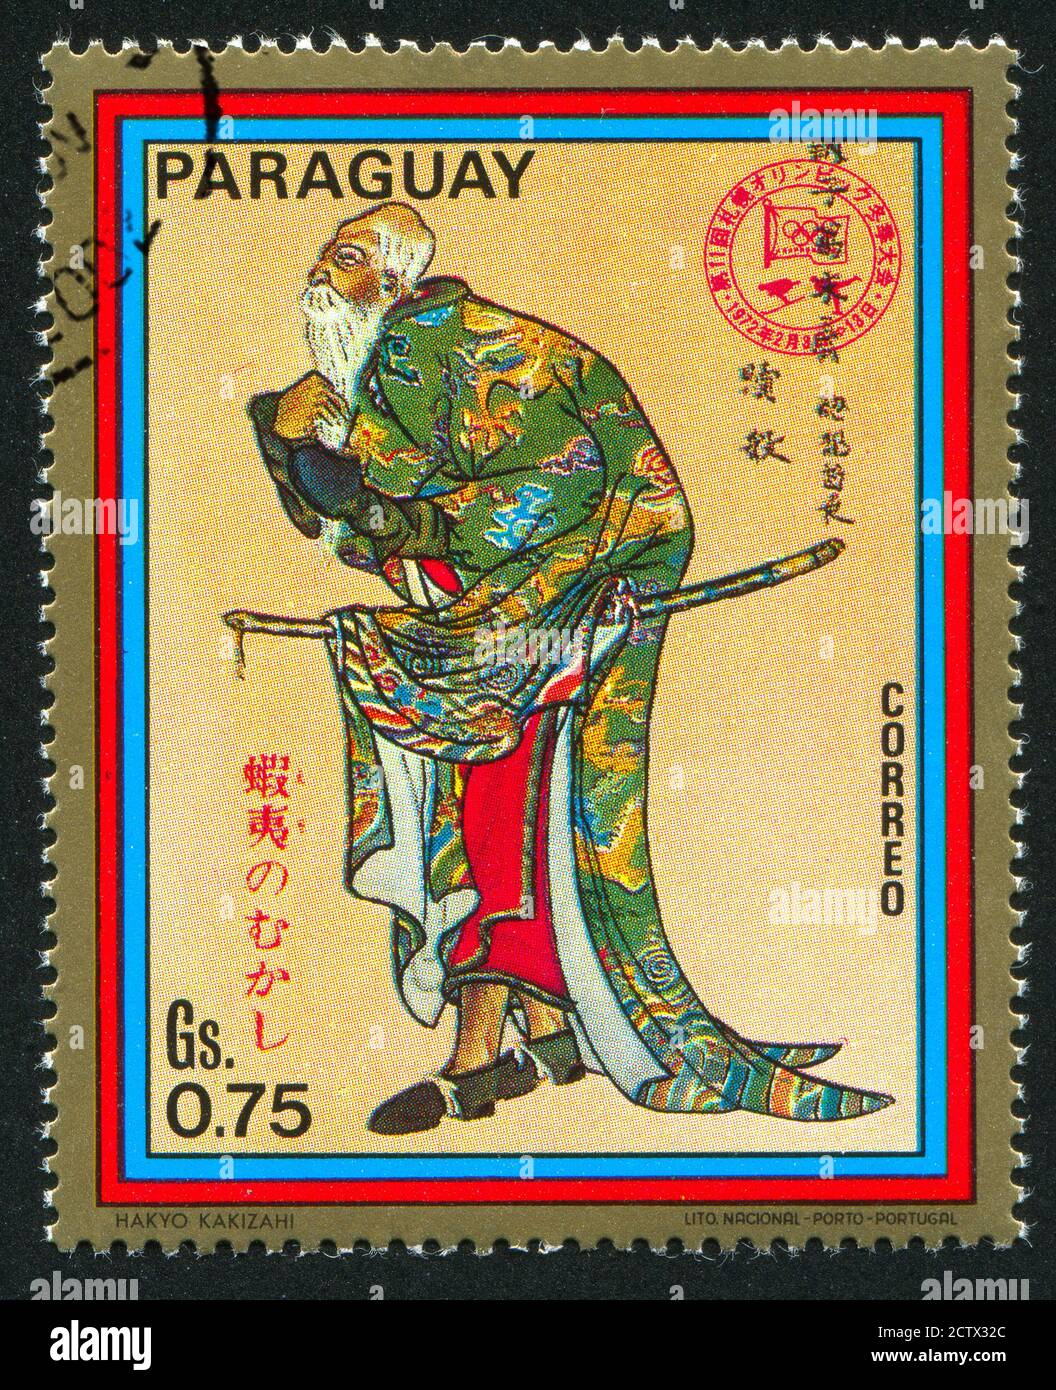 PARAGUAY - VERS 1971: Timbre imprimé par le Paraguay, montre samouraï, vers 1971. Banque D'Images